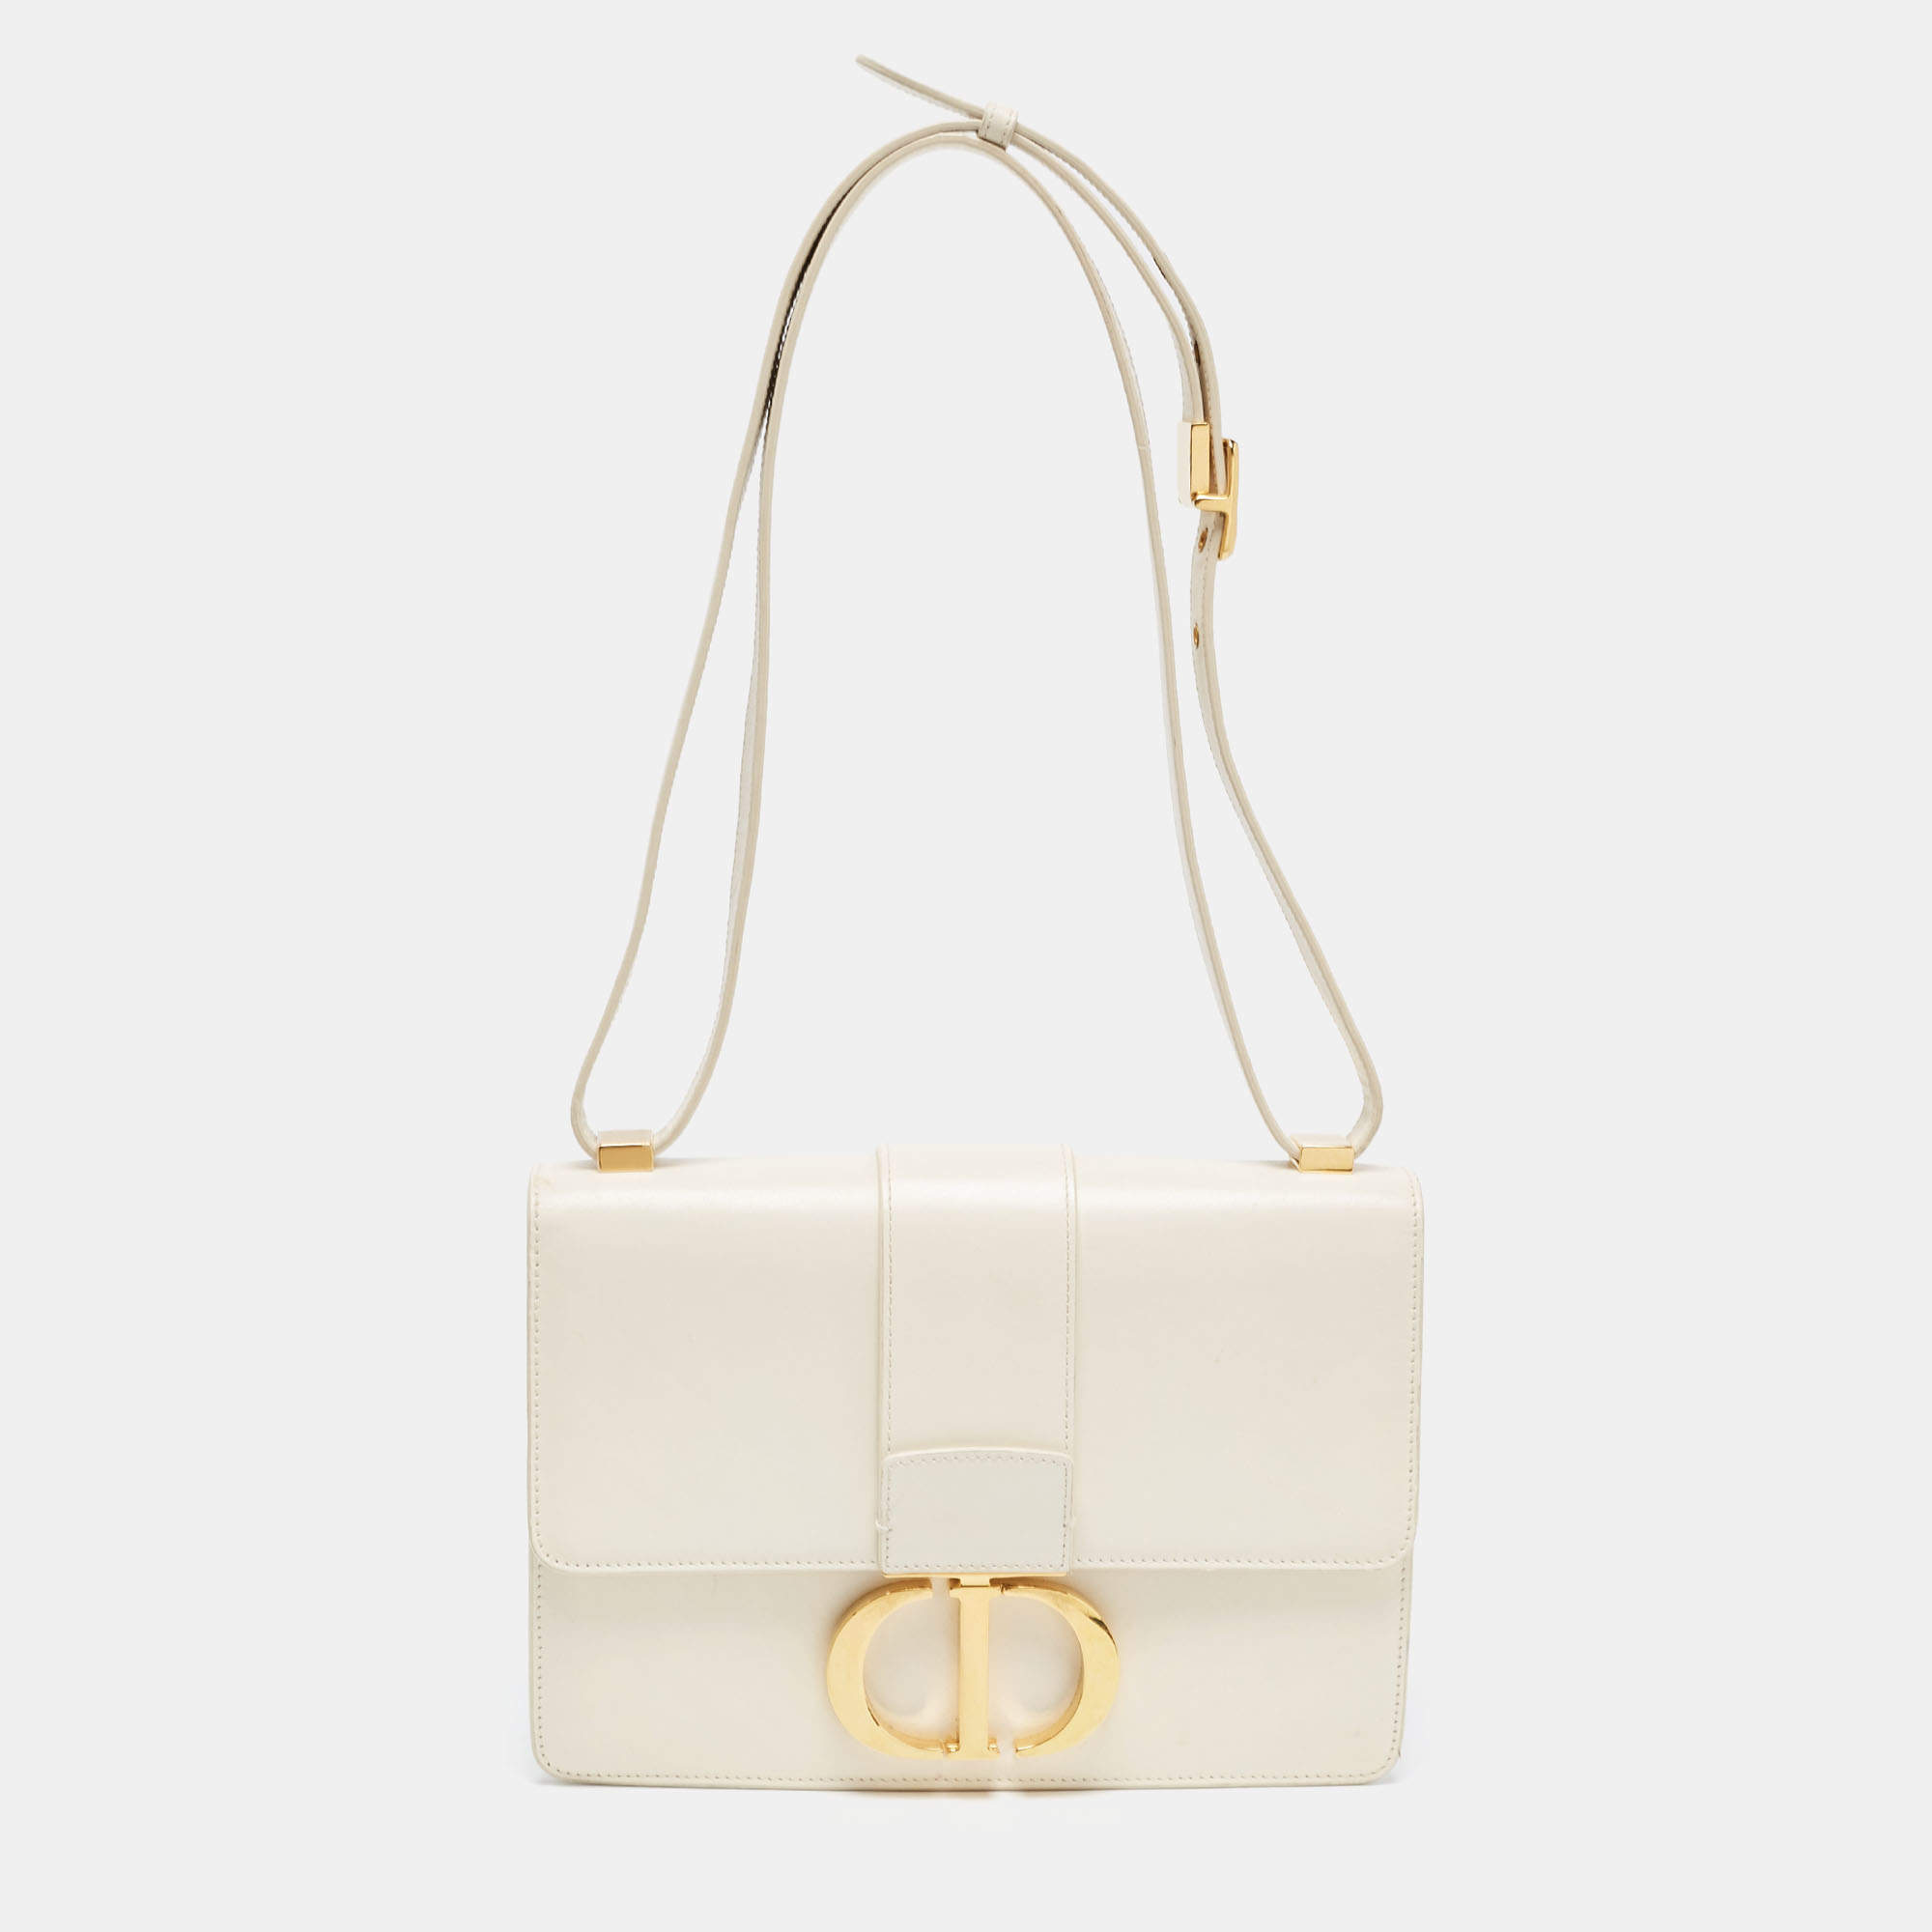 Dior 30 Montaigne Exclusive Handbag Release